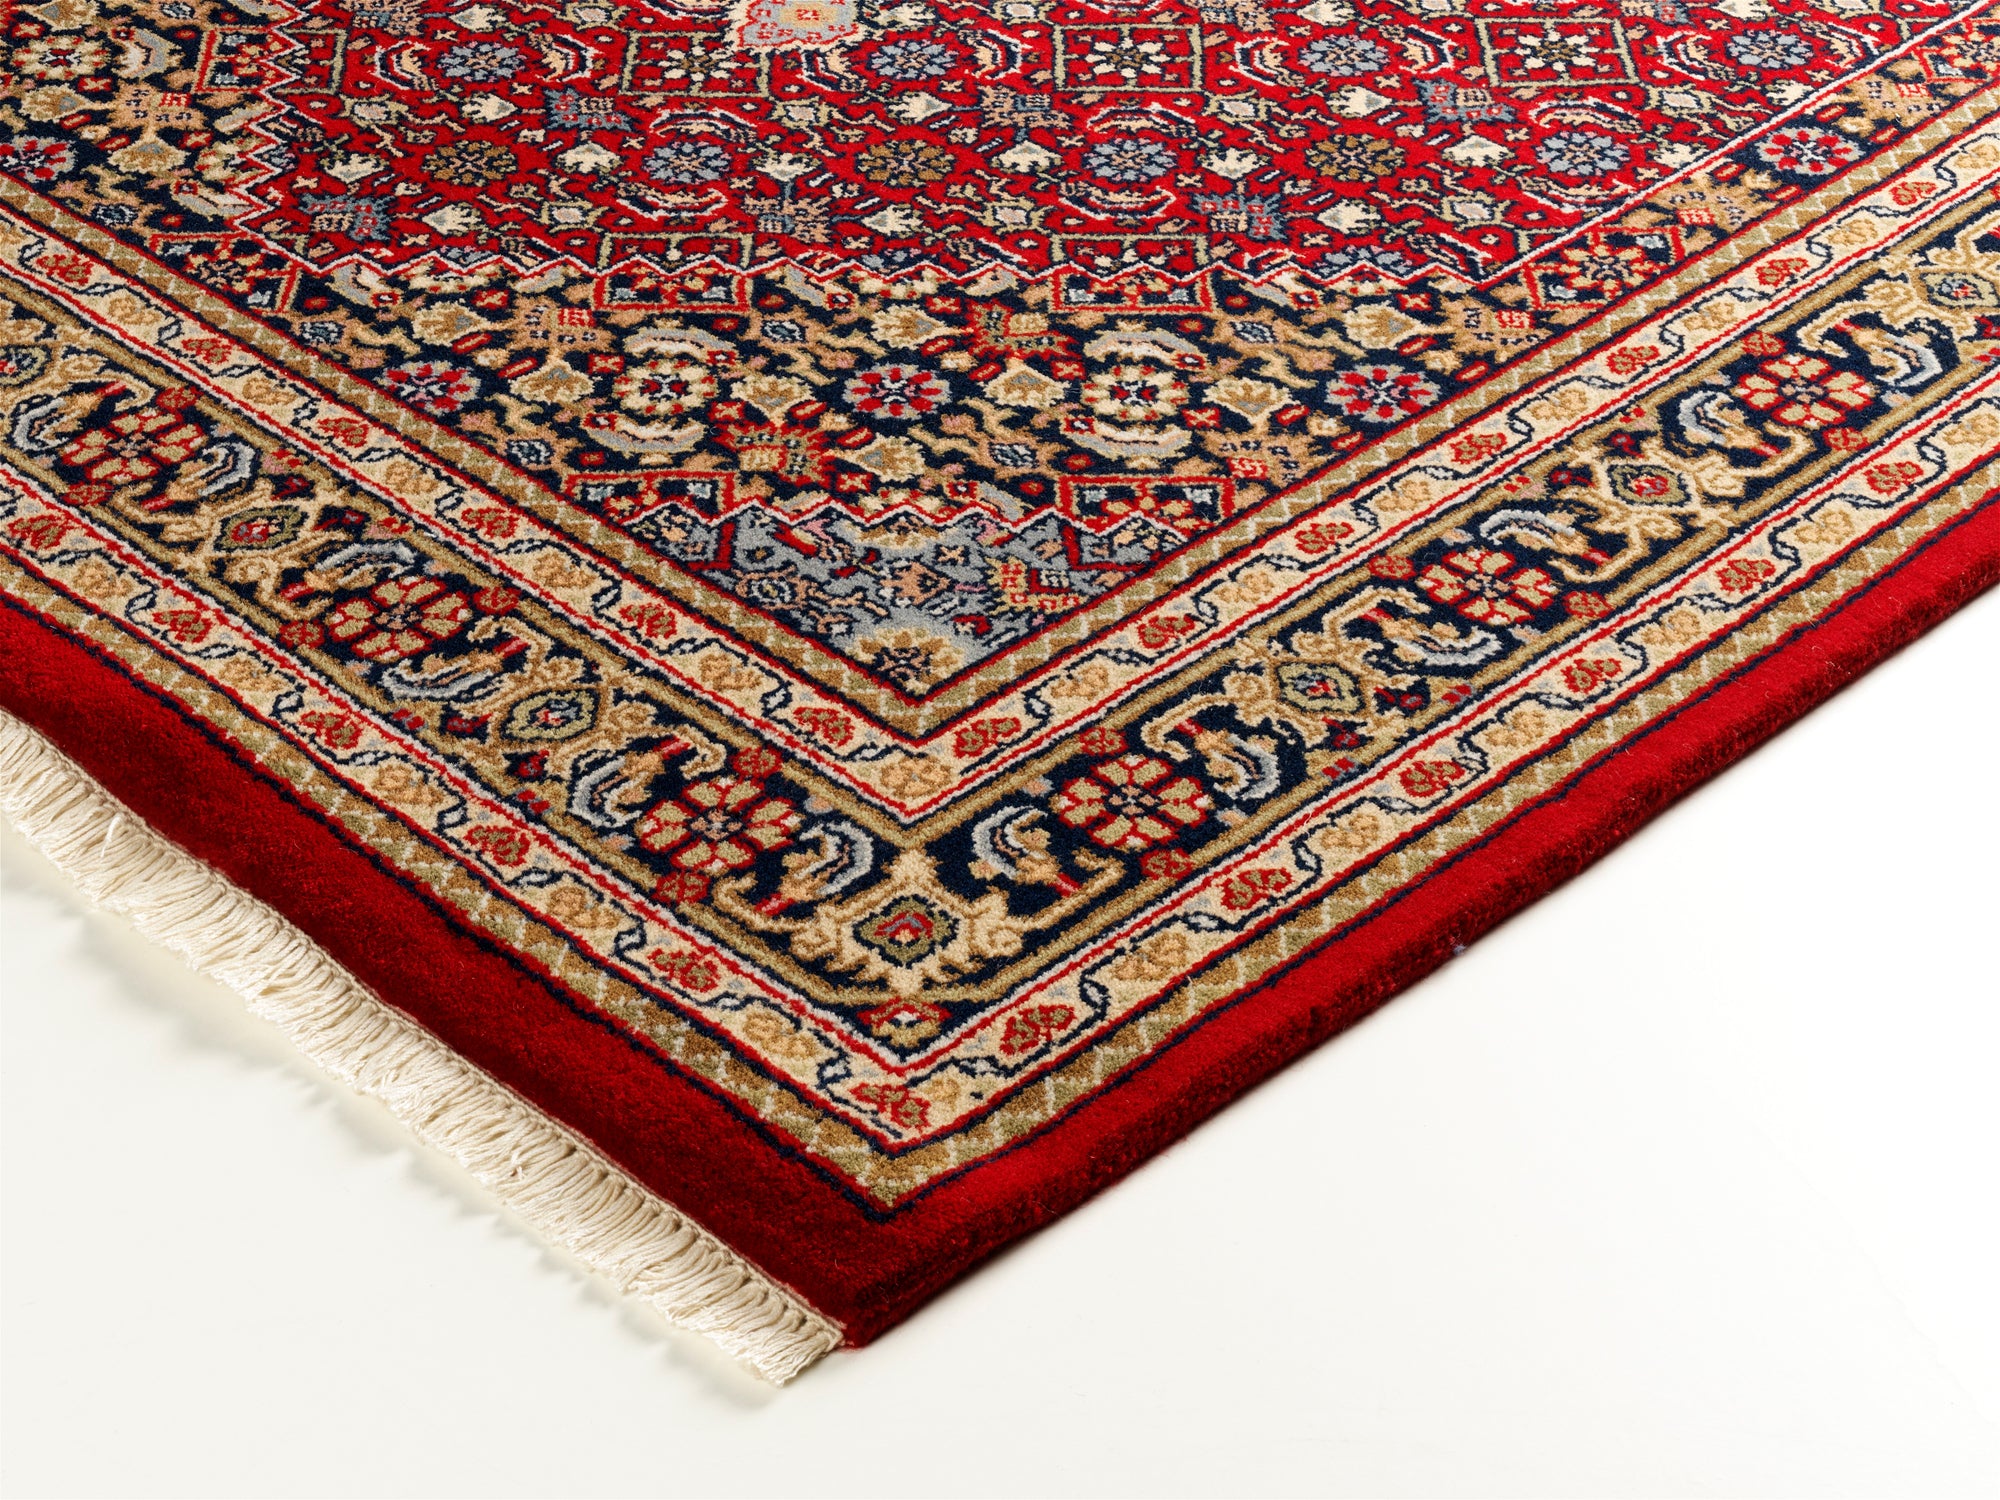 BIDJAR Orient-Teppich echter Teppich rot-blau handgeknüpft HIMLA klassischer OCI